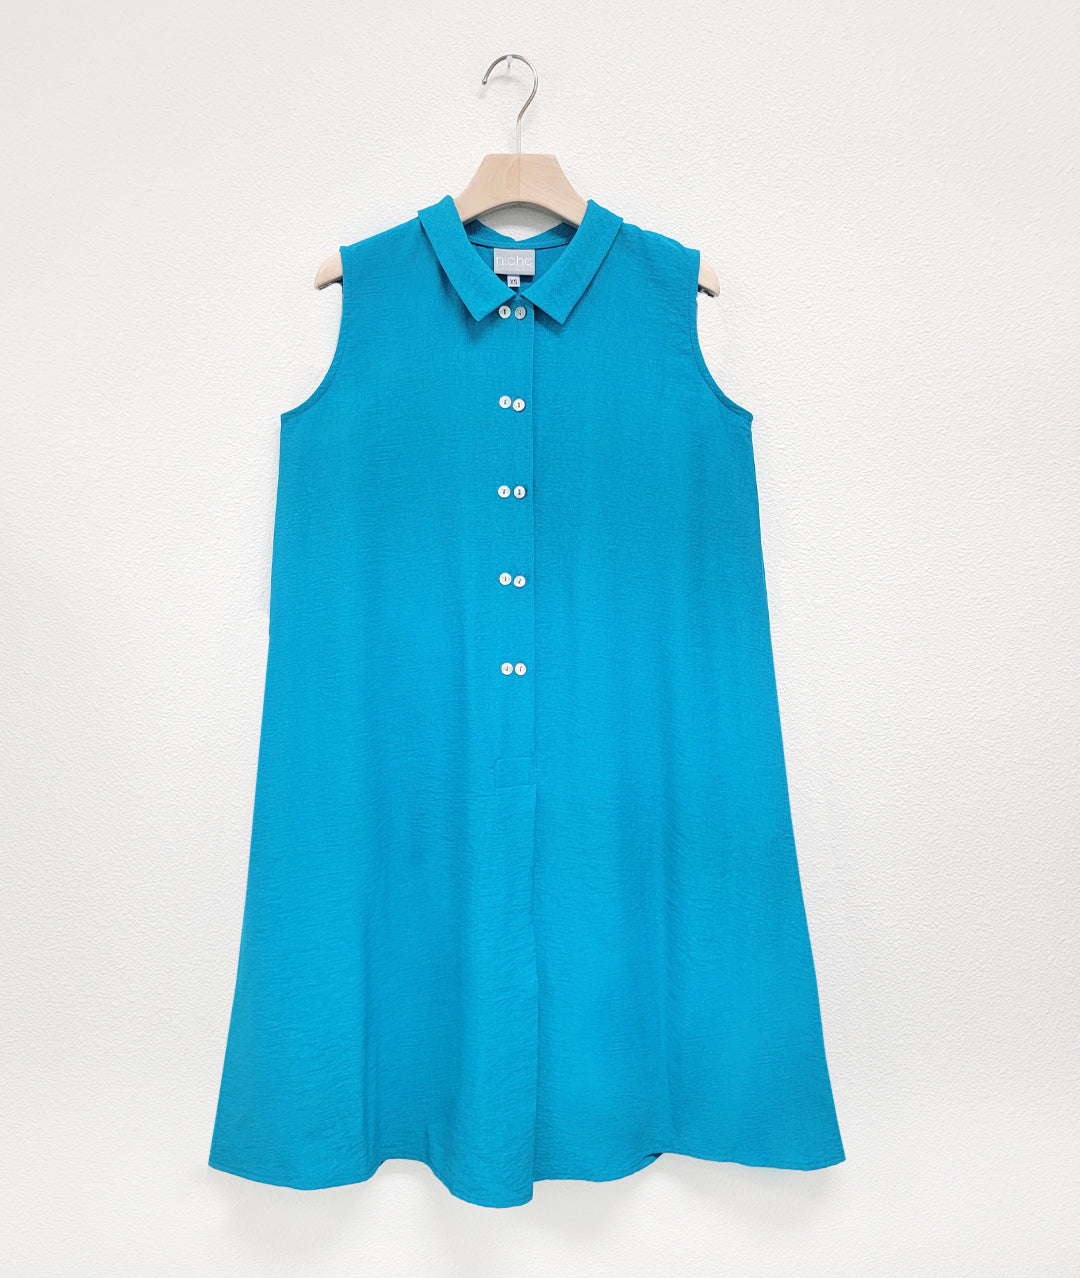 Niche - Rayon - Twinbutton Dress - Turquoise